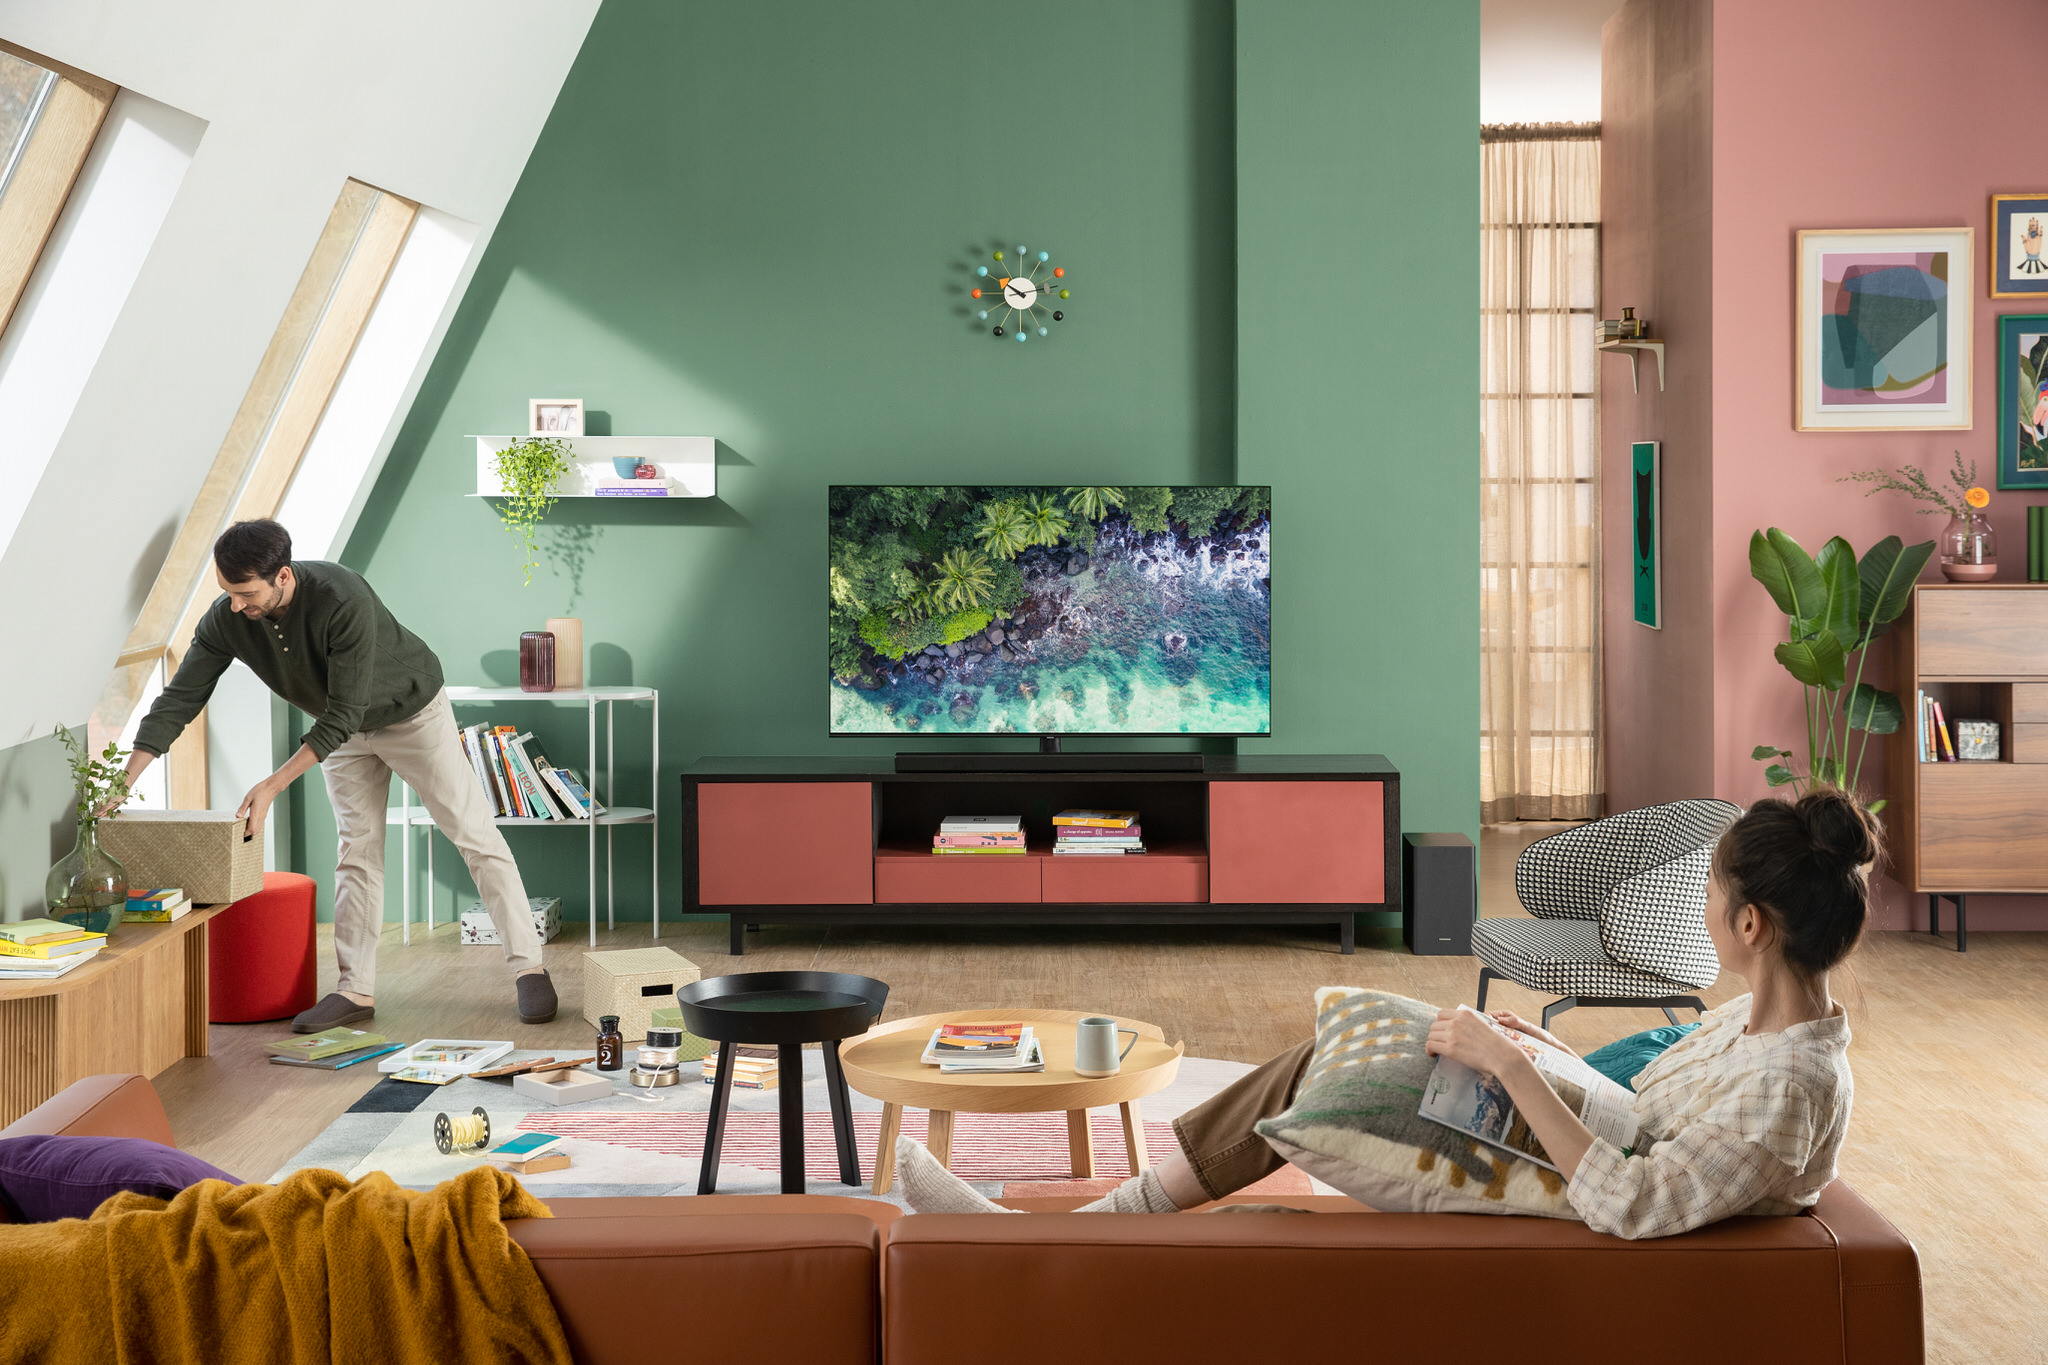 Công nghệ Dynamic Crystal Display của Samsung: Tiêu chuẩn cho TV thế hệ mới